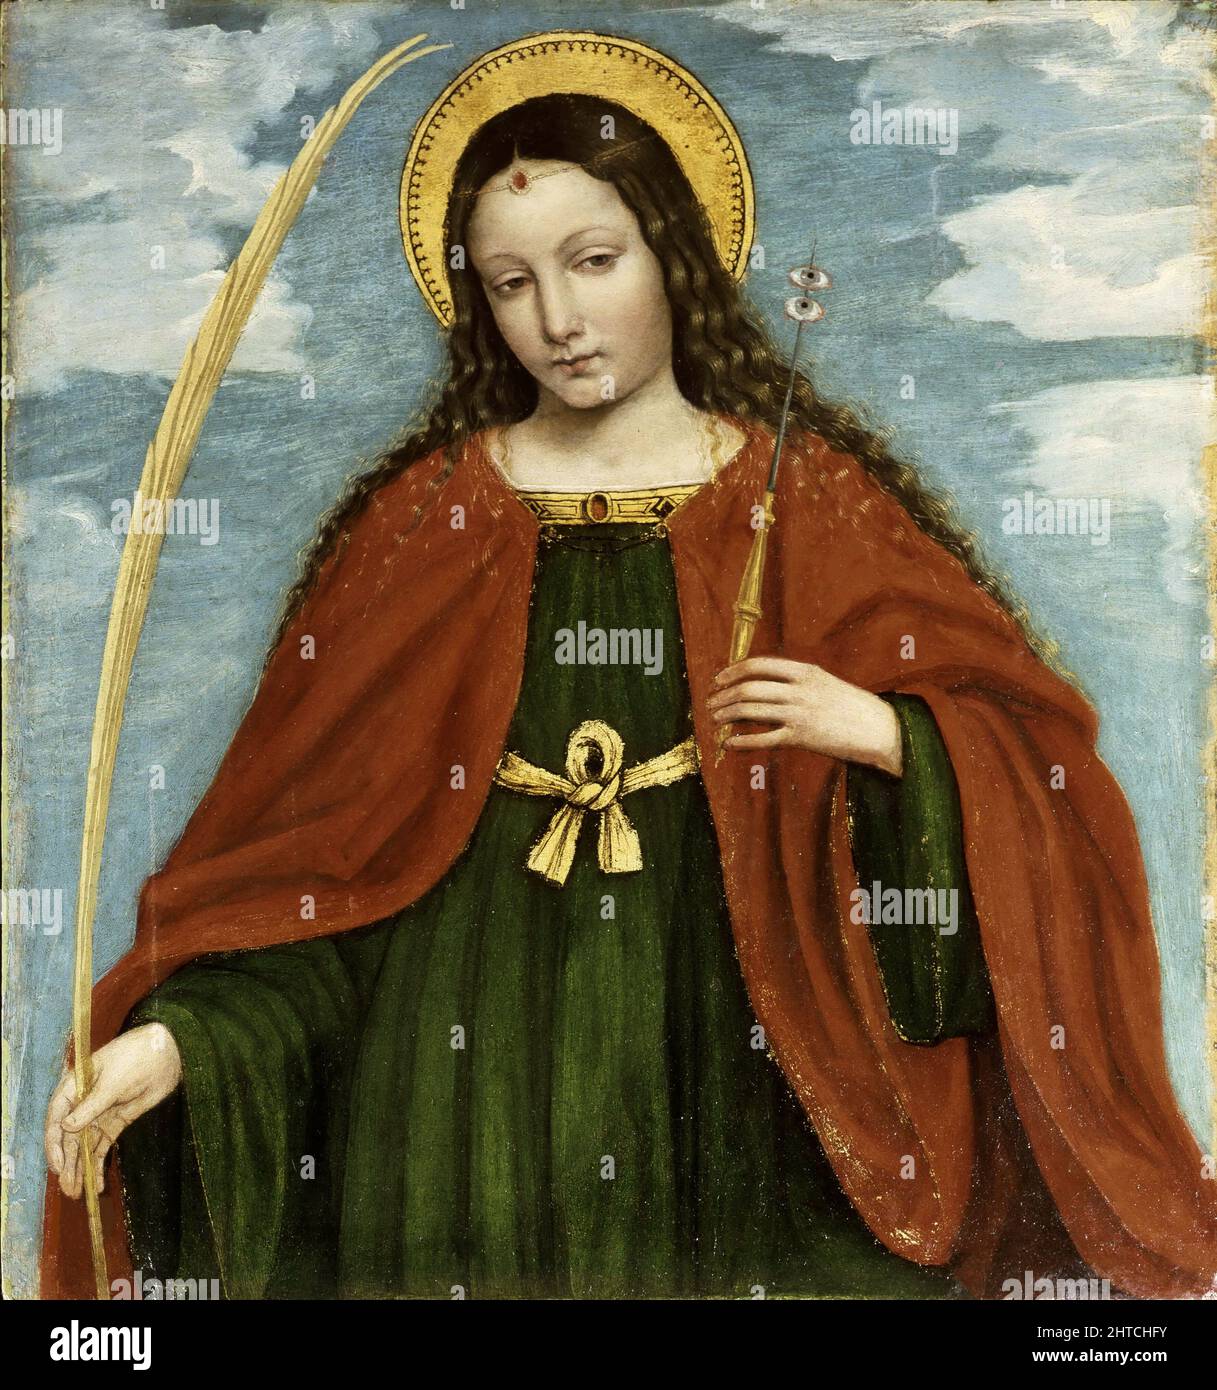 Santa Lucia (dal polittico di San Bartolomeo), 1515-1520. Trovato nella Collezione dell'Accademia Carrara di Bergamo. Foto Stock